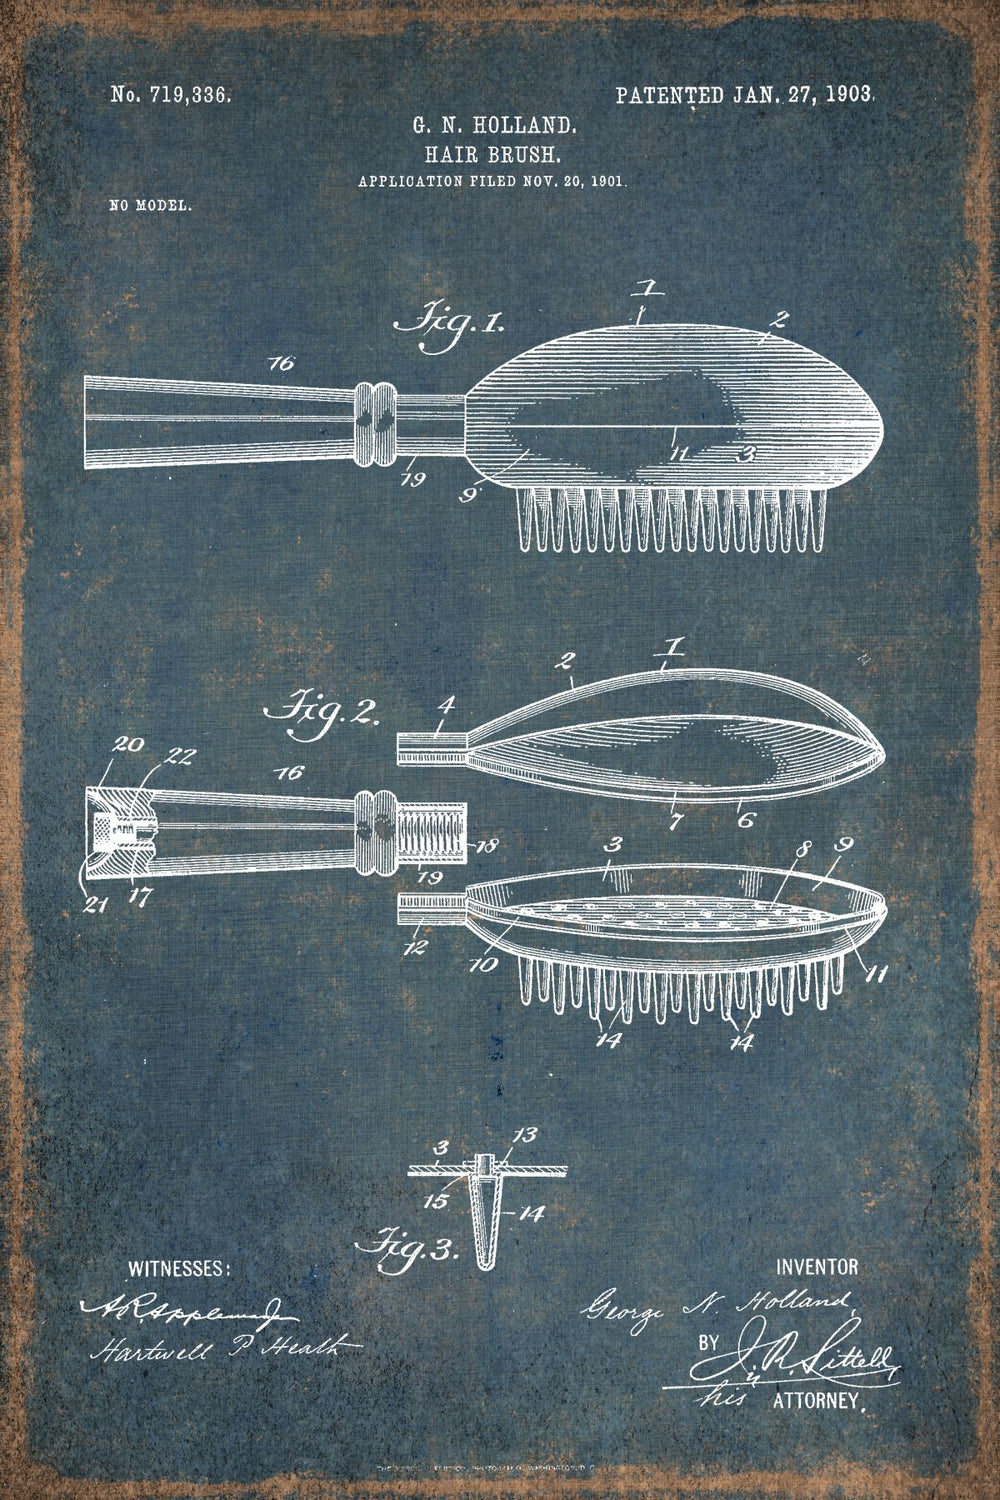 Hair Brush 1903 Patent